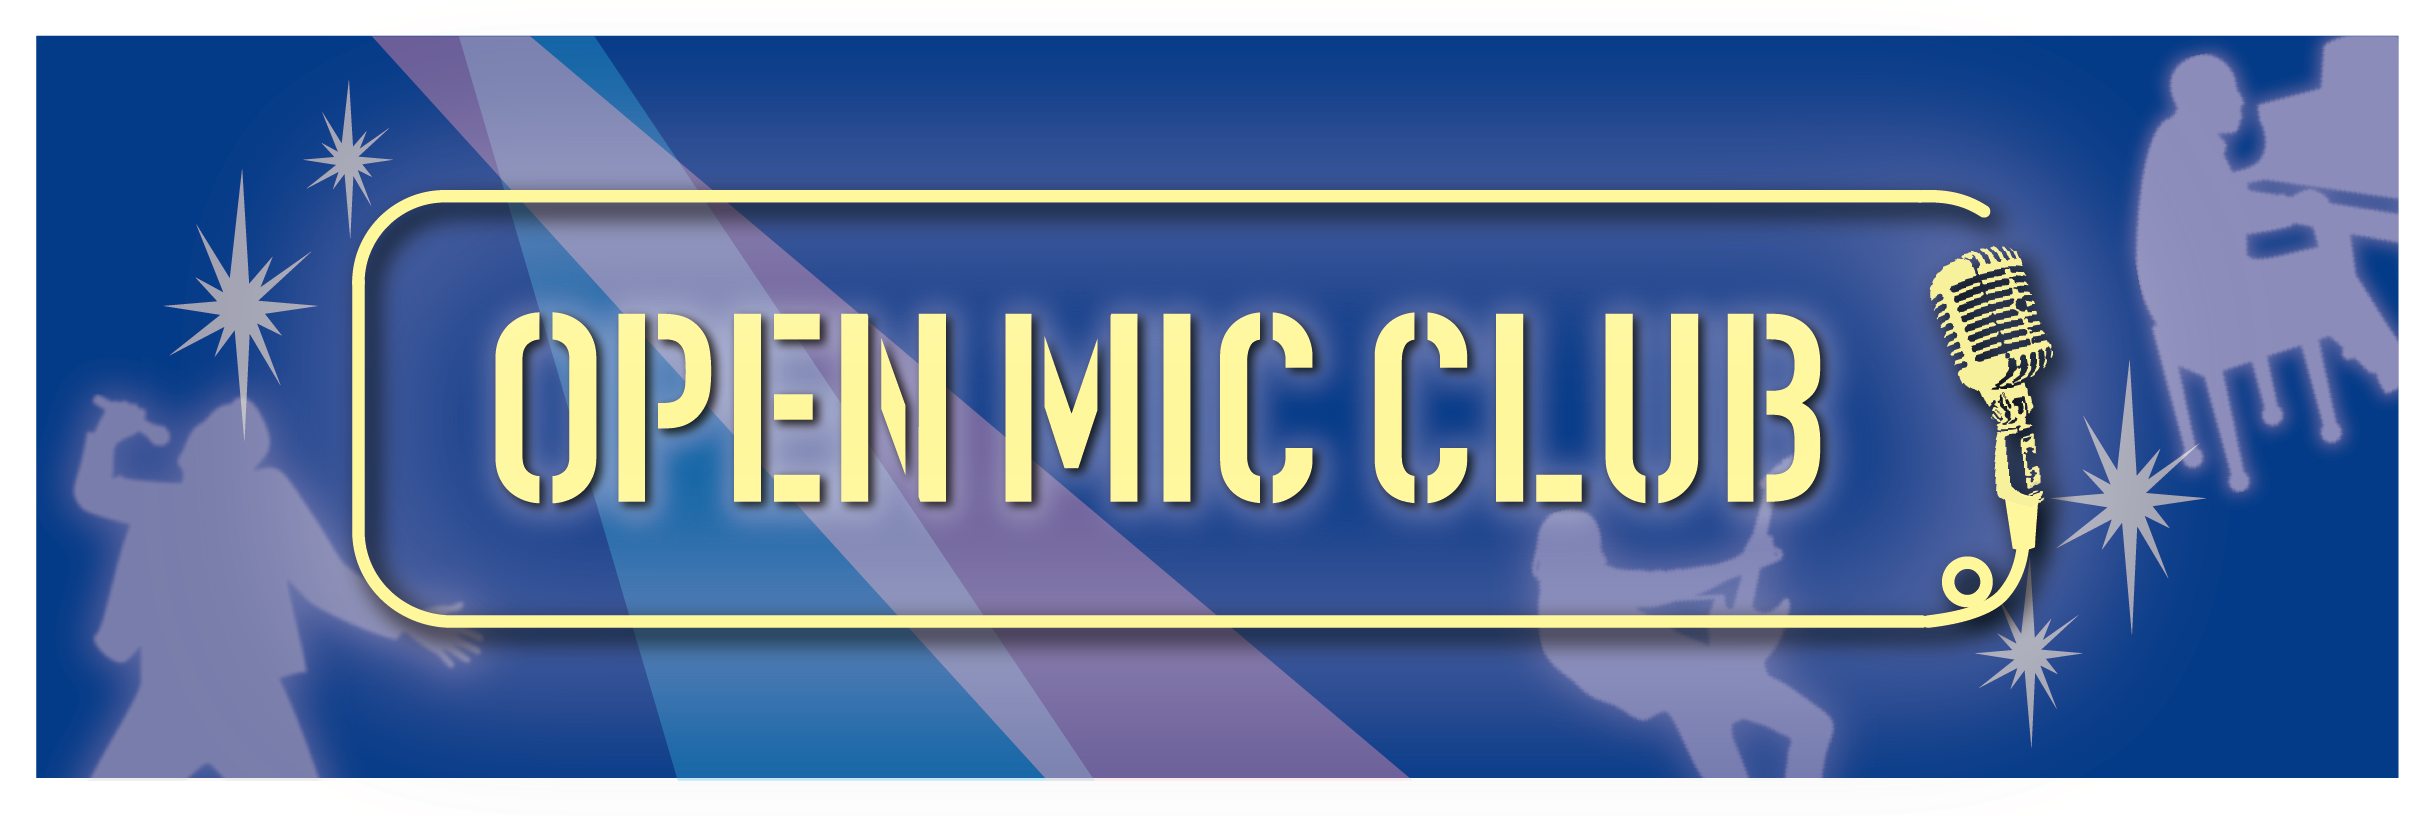 OPEN MIC CLUB開催しました！ OPEN MIC CLUB担当の竹田です！本日もOPEN MIC　CLUB開催いたしました！活動の様子をサークルレポートでお届けいたします！ 「OPEN MIC CLUB」って何？という方はこちら 「OPEN MIC CLUB」とは、みんなで楽しく音楽を歌い […]